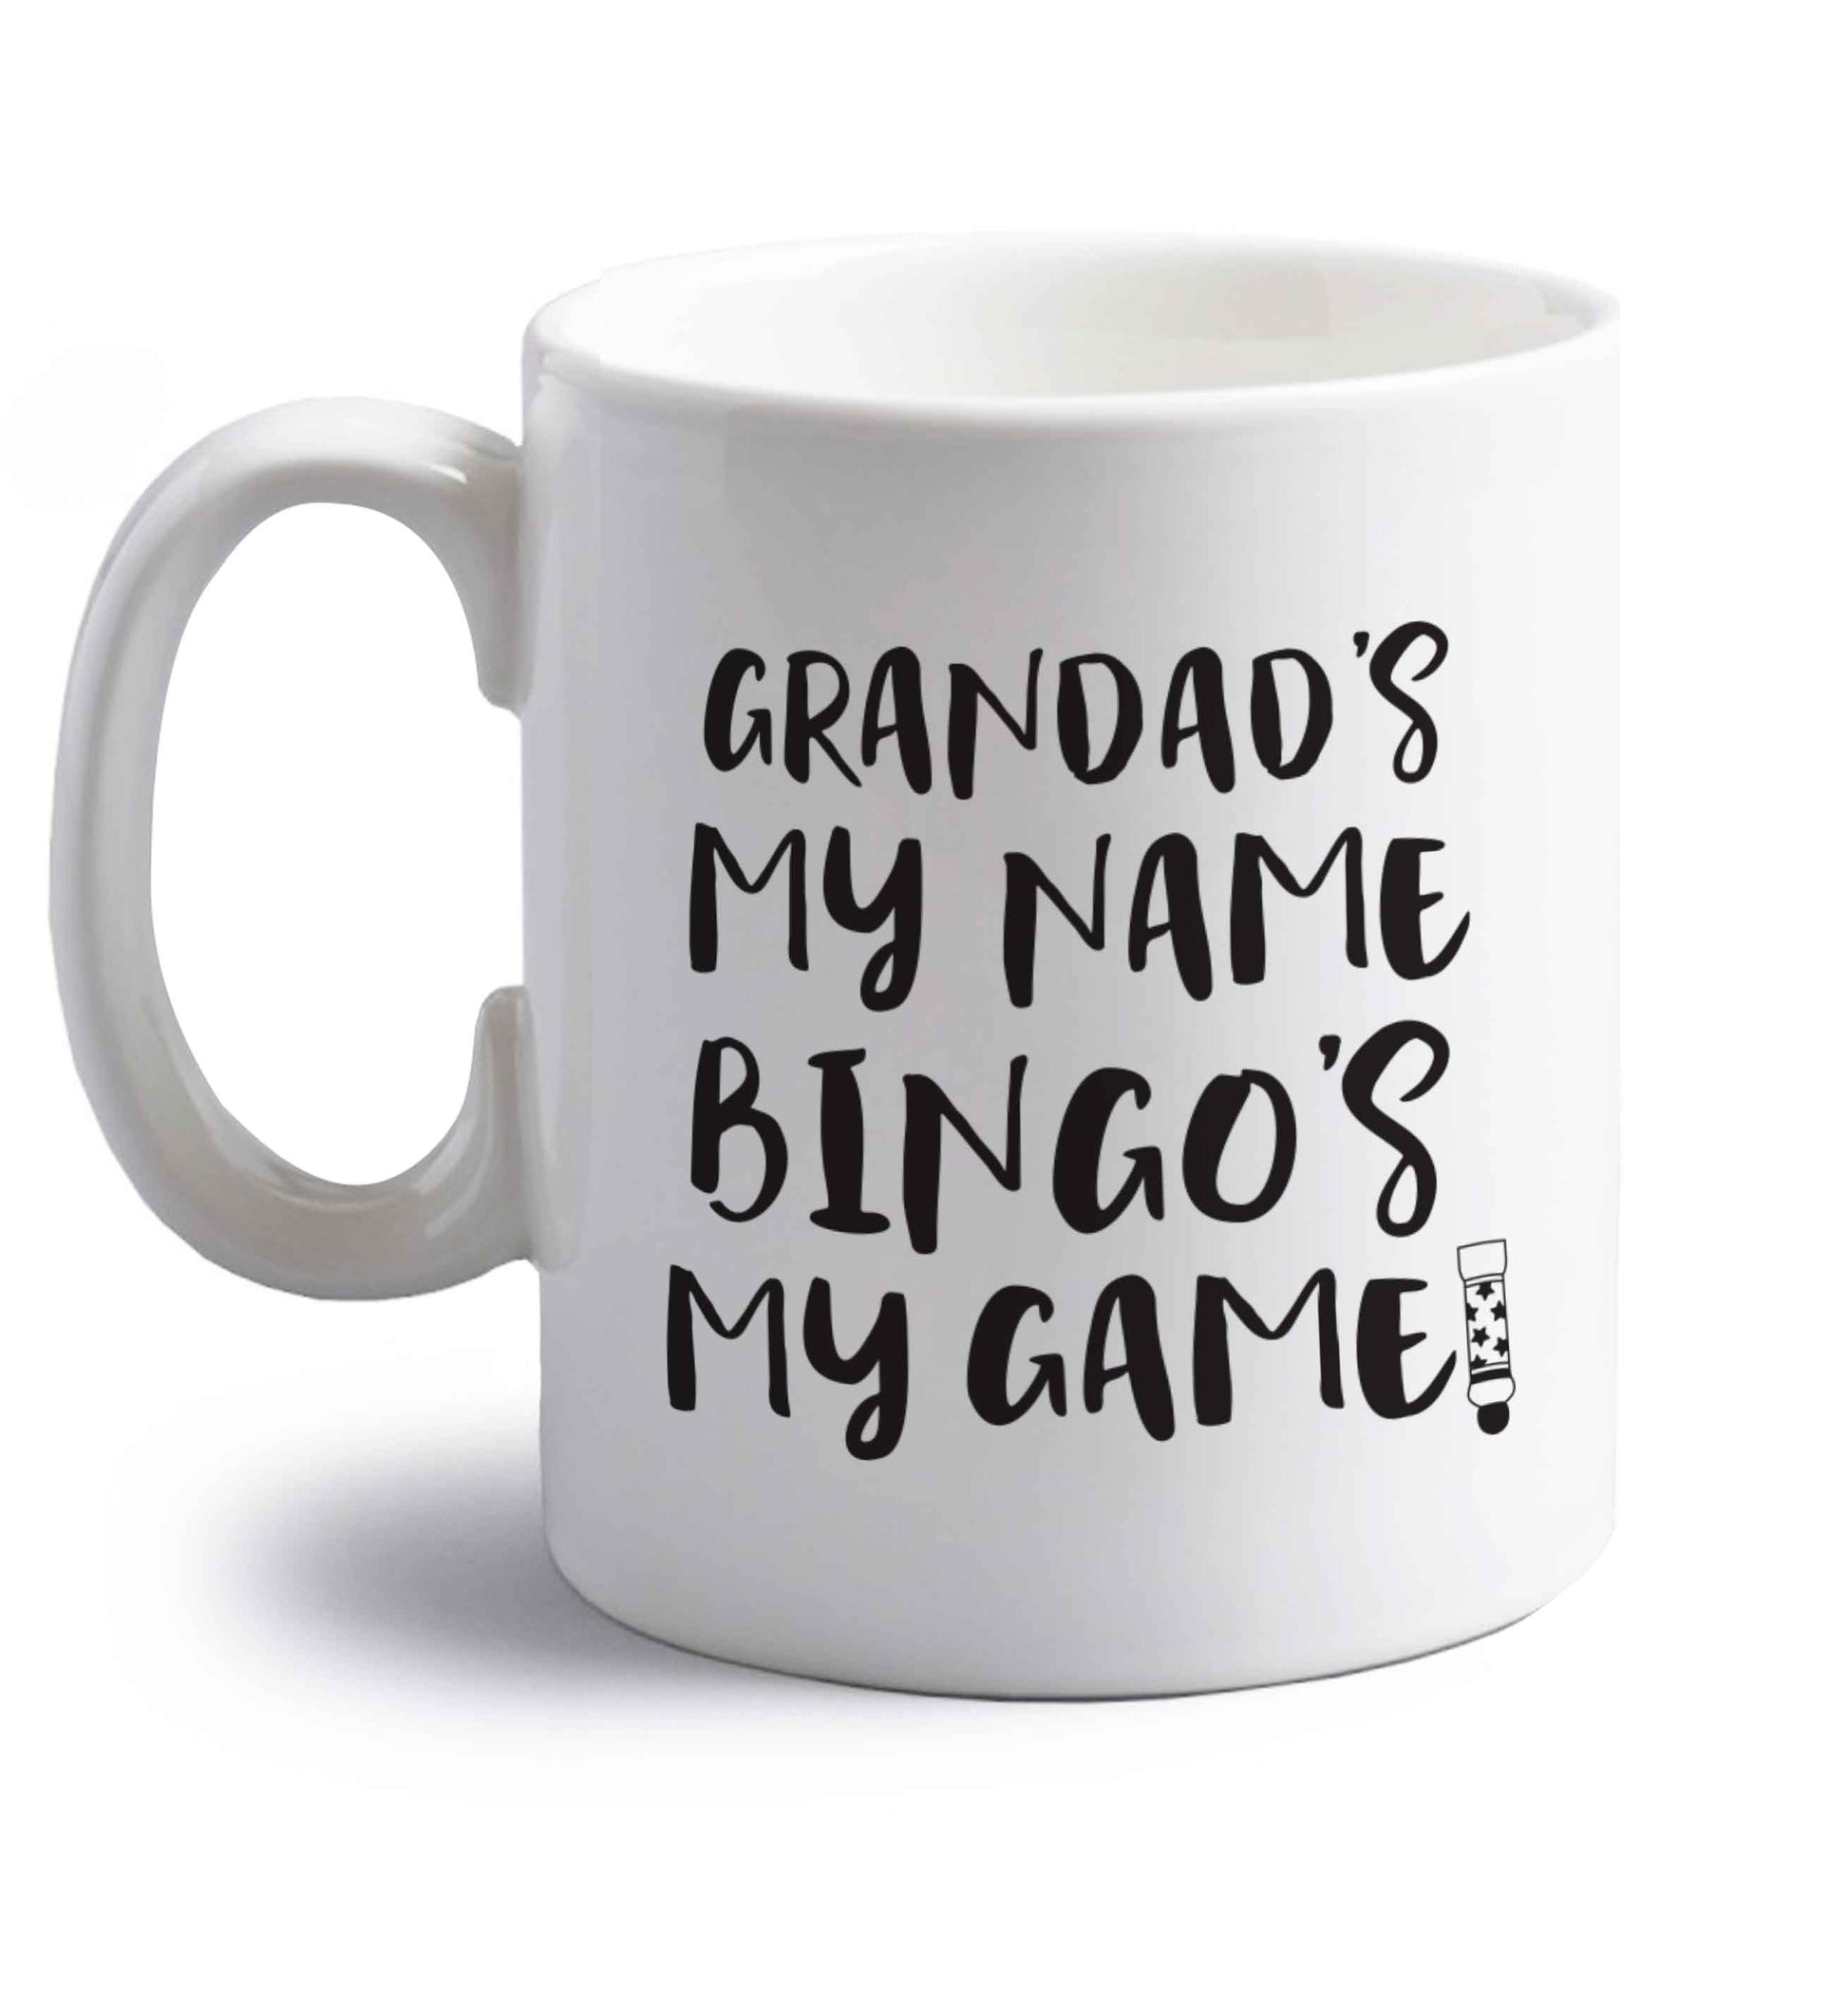 Grandad's my name bingo's my game! right handed white ceramic mug 